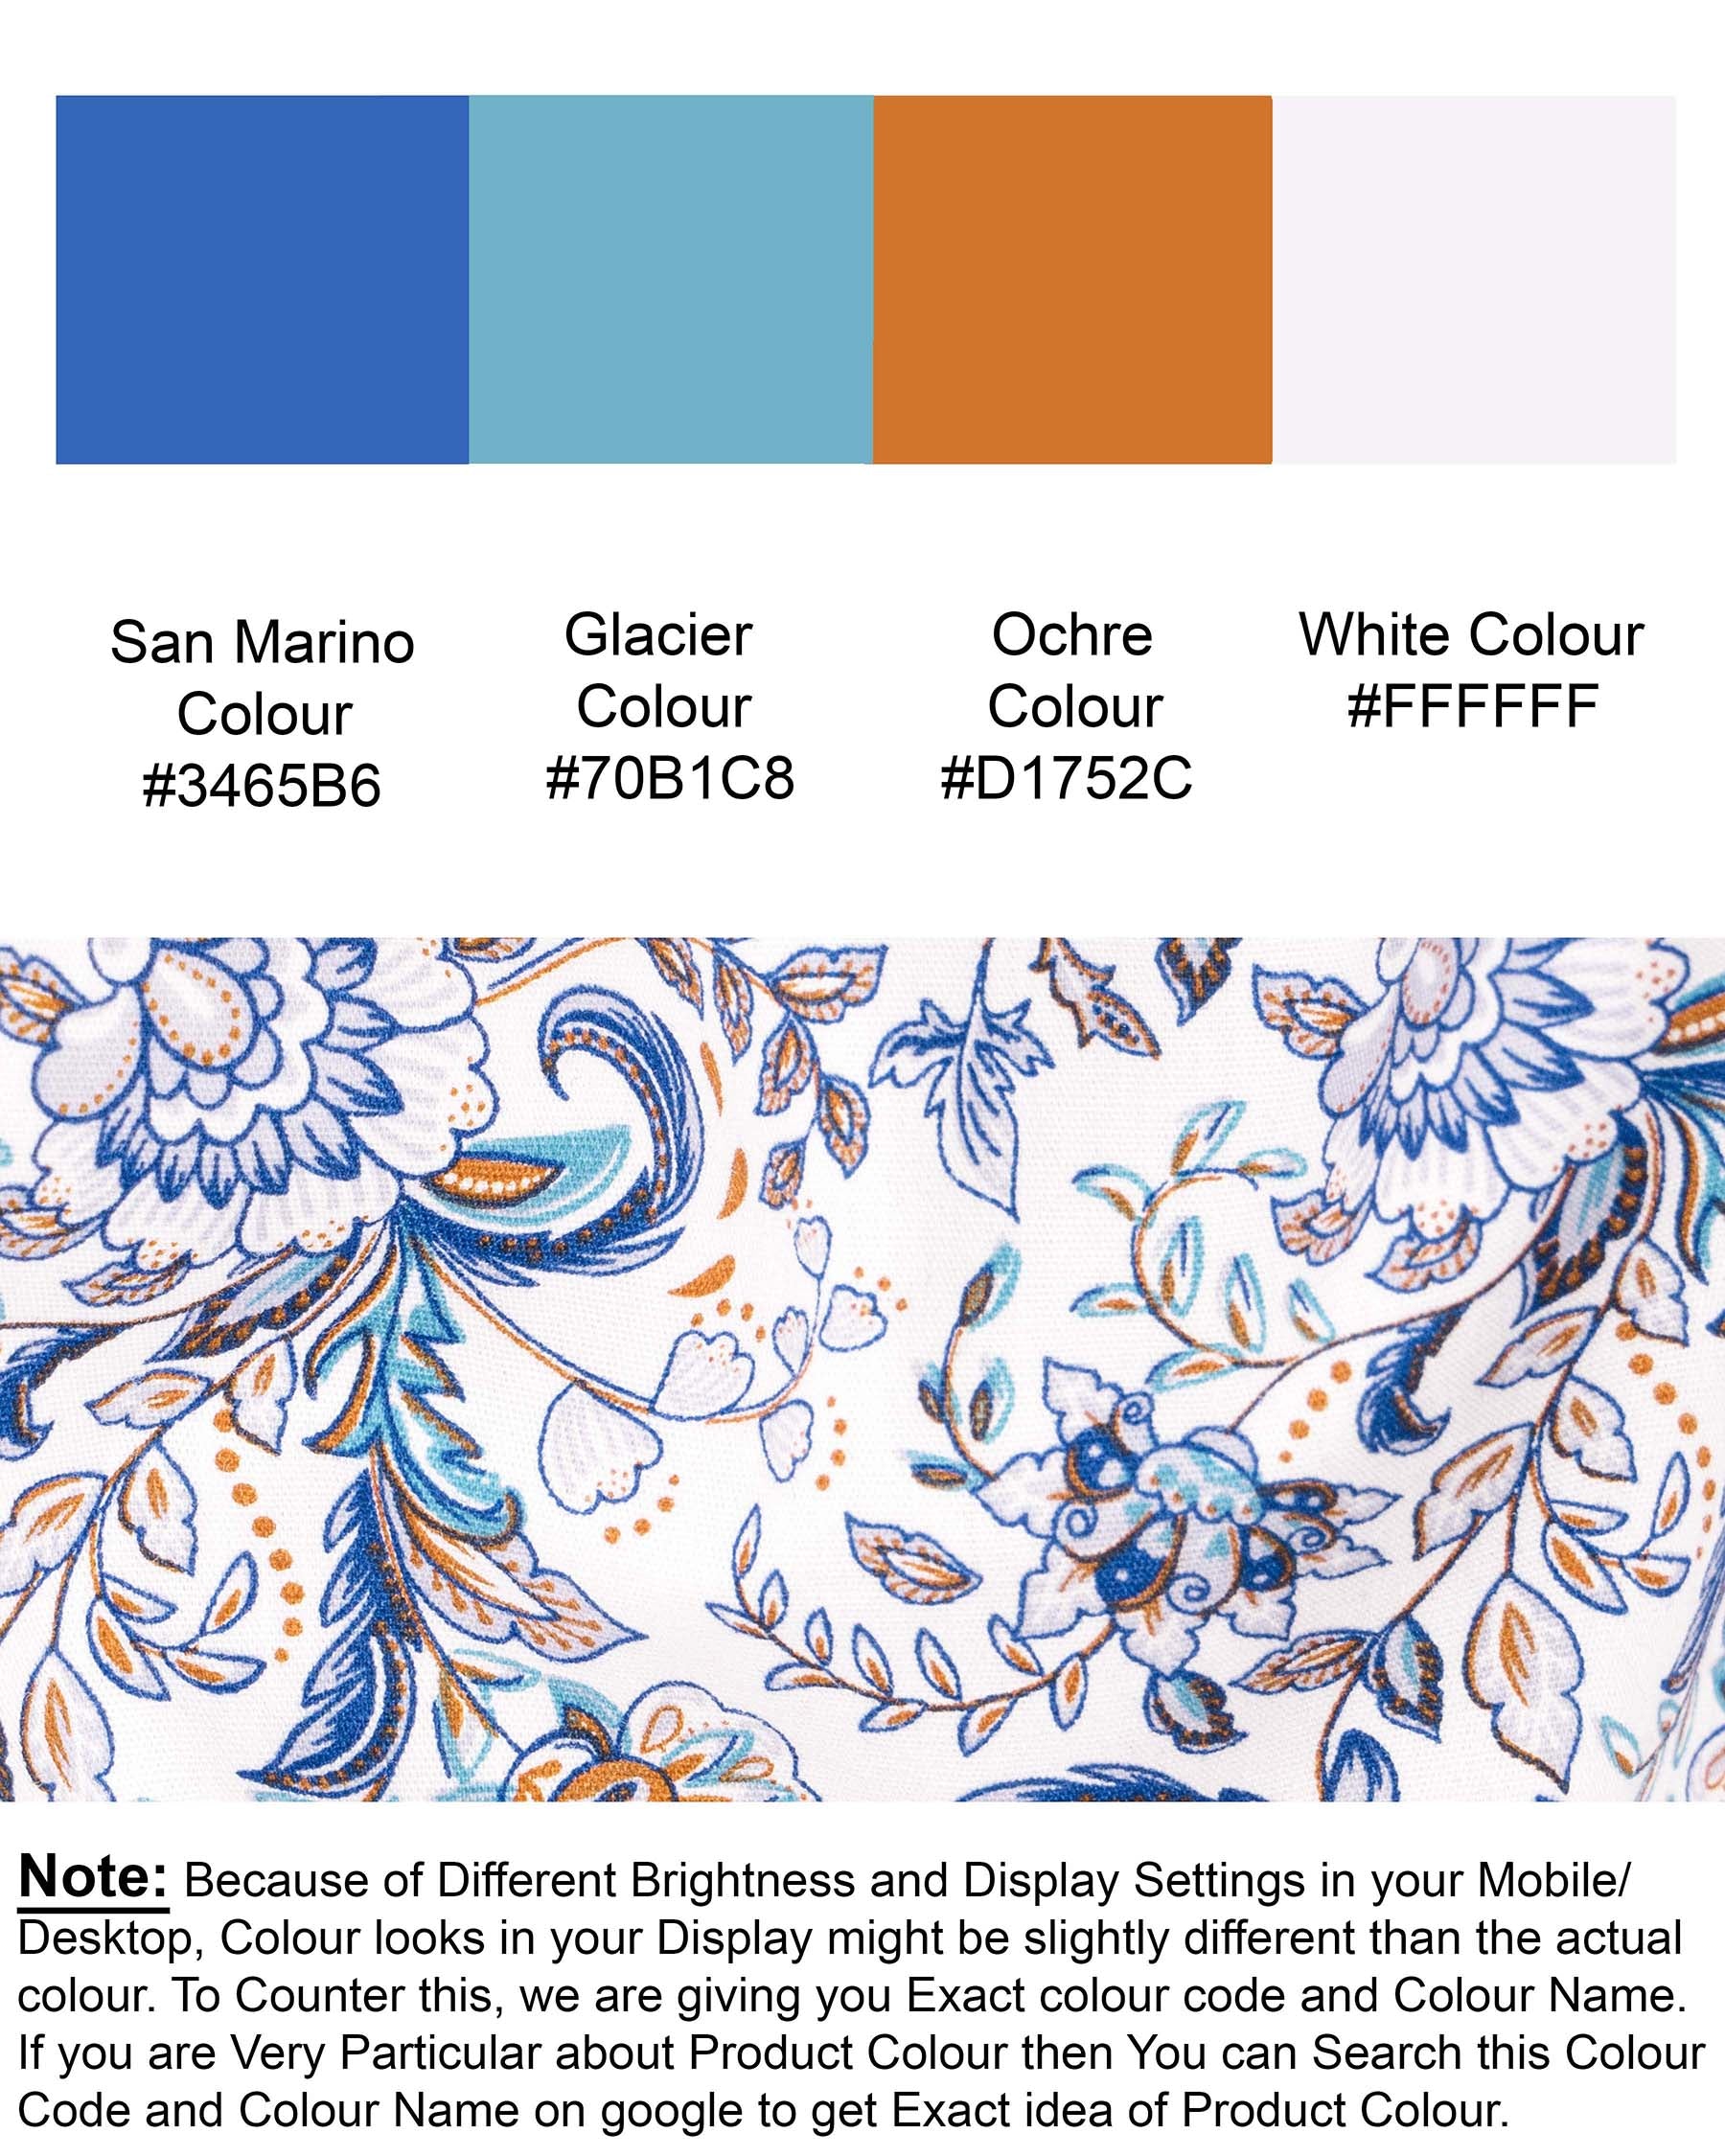 Bright White Floral Print Premium Cotton Shirt 6166-38, 6166-H-38, 6166-39, 6166-H-39, 6166-40, 6166-H-40, 6166-42, 6166-H-42, 6166-44, 6166-H-44, 6166-46, 6166-H-46, 6166-48, 6166-H-48, 6166-50, 6166-H-50, 6166-52, 6166-H-52